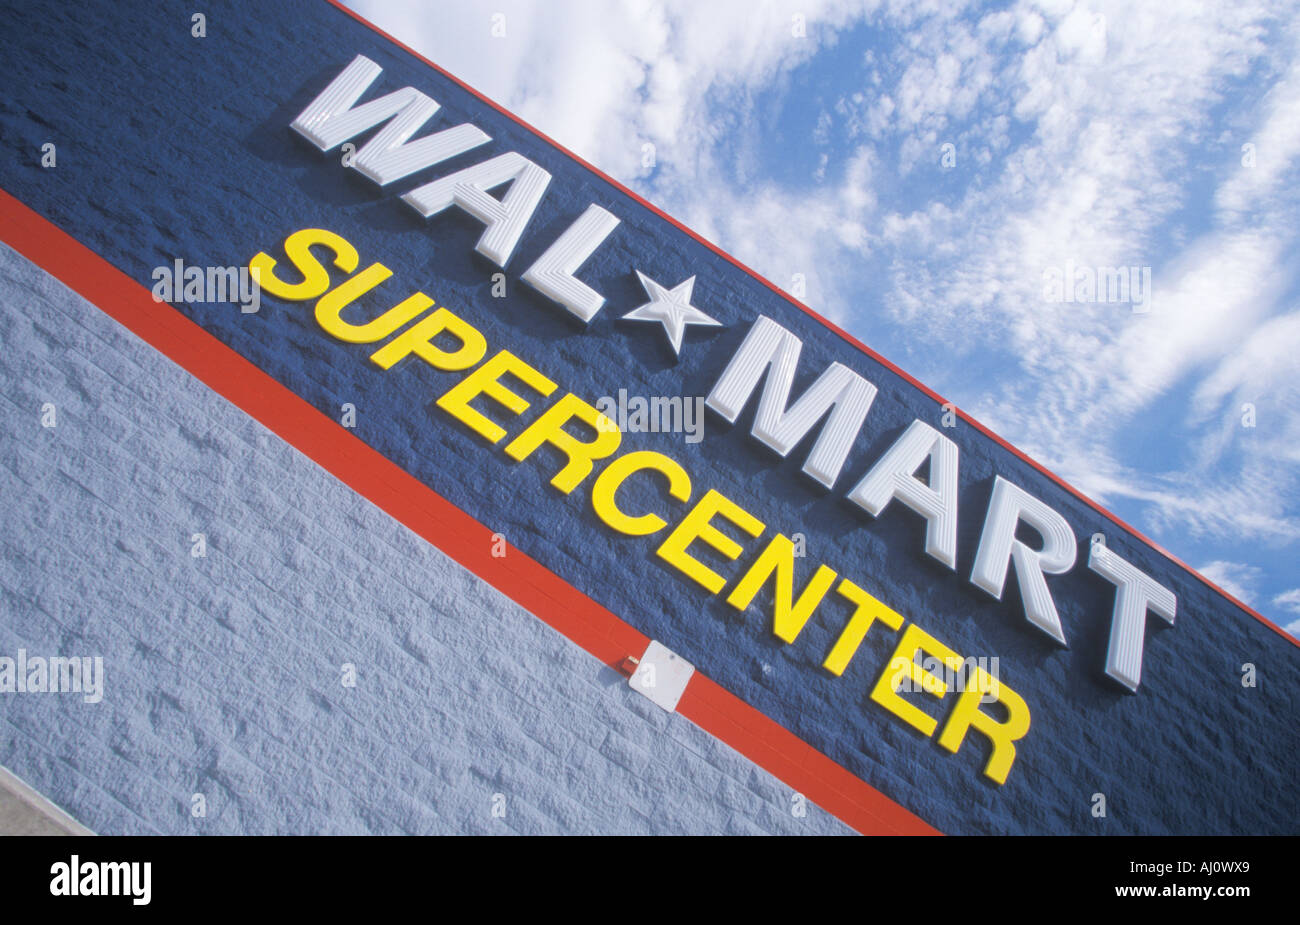 Wall Mart Supercenter in AR billig Preisen Stockfoto